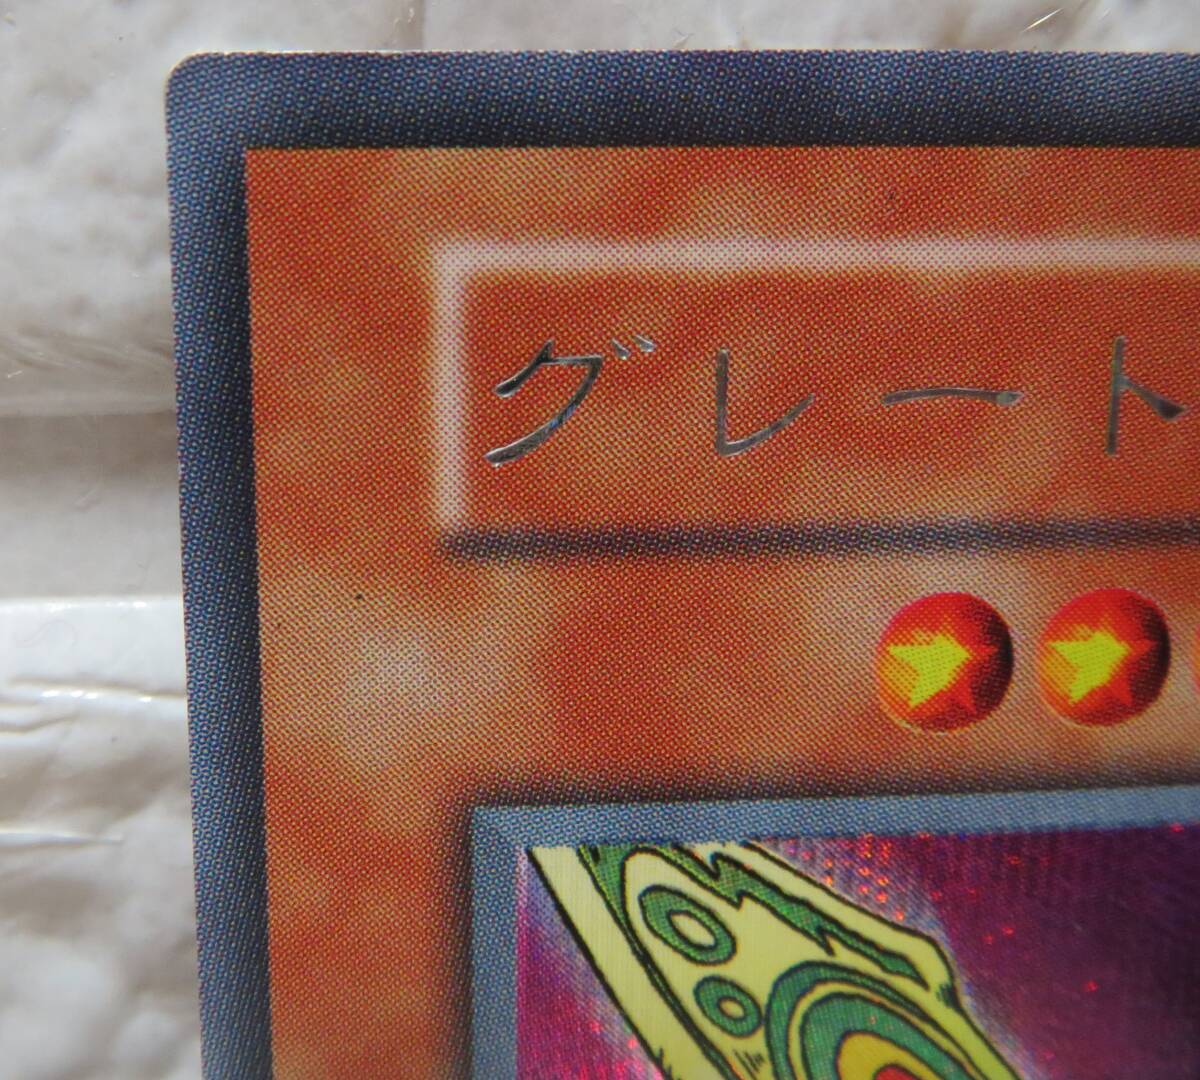 遊戯王・グレート・モス・1999年2月から2000年3月までの初期・カード名銀色・あとは写真をじっくりご覧ください_画像4